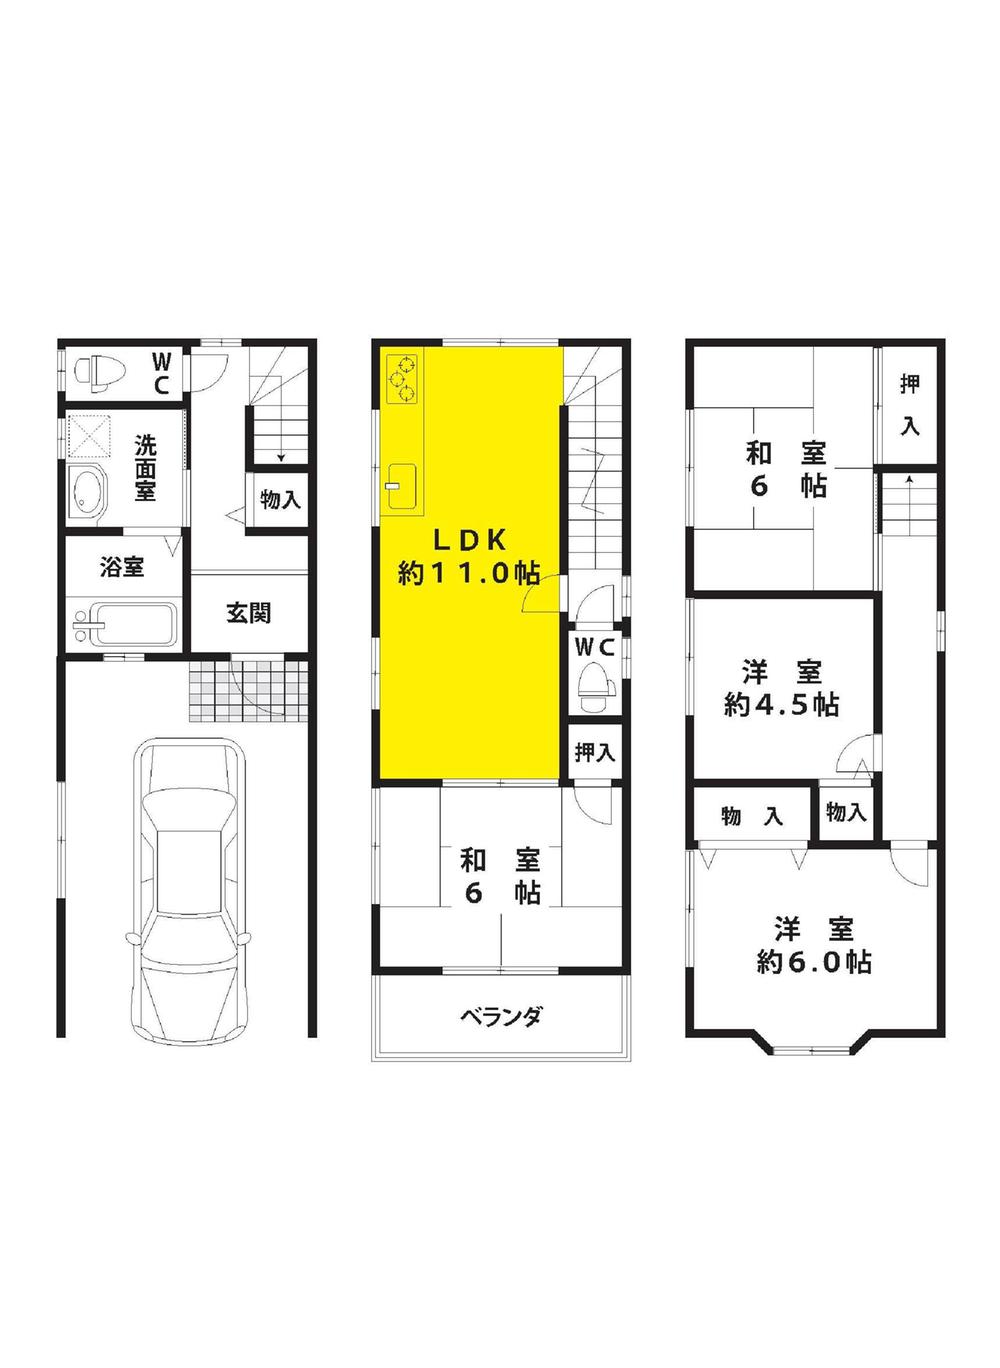 Floor plan. 17.7 million yen, 4LDK, Land area 41.98 sq m , Building area 92.82 sq m